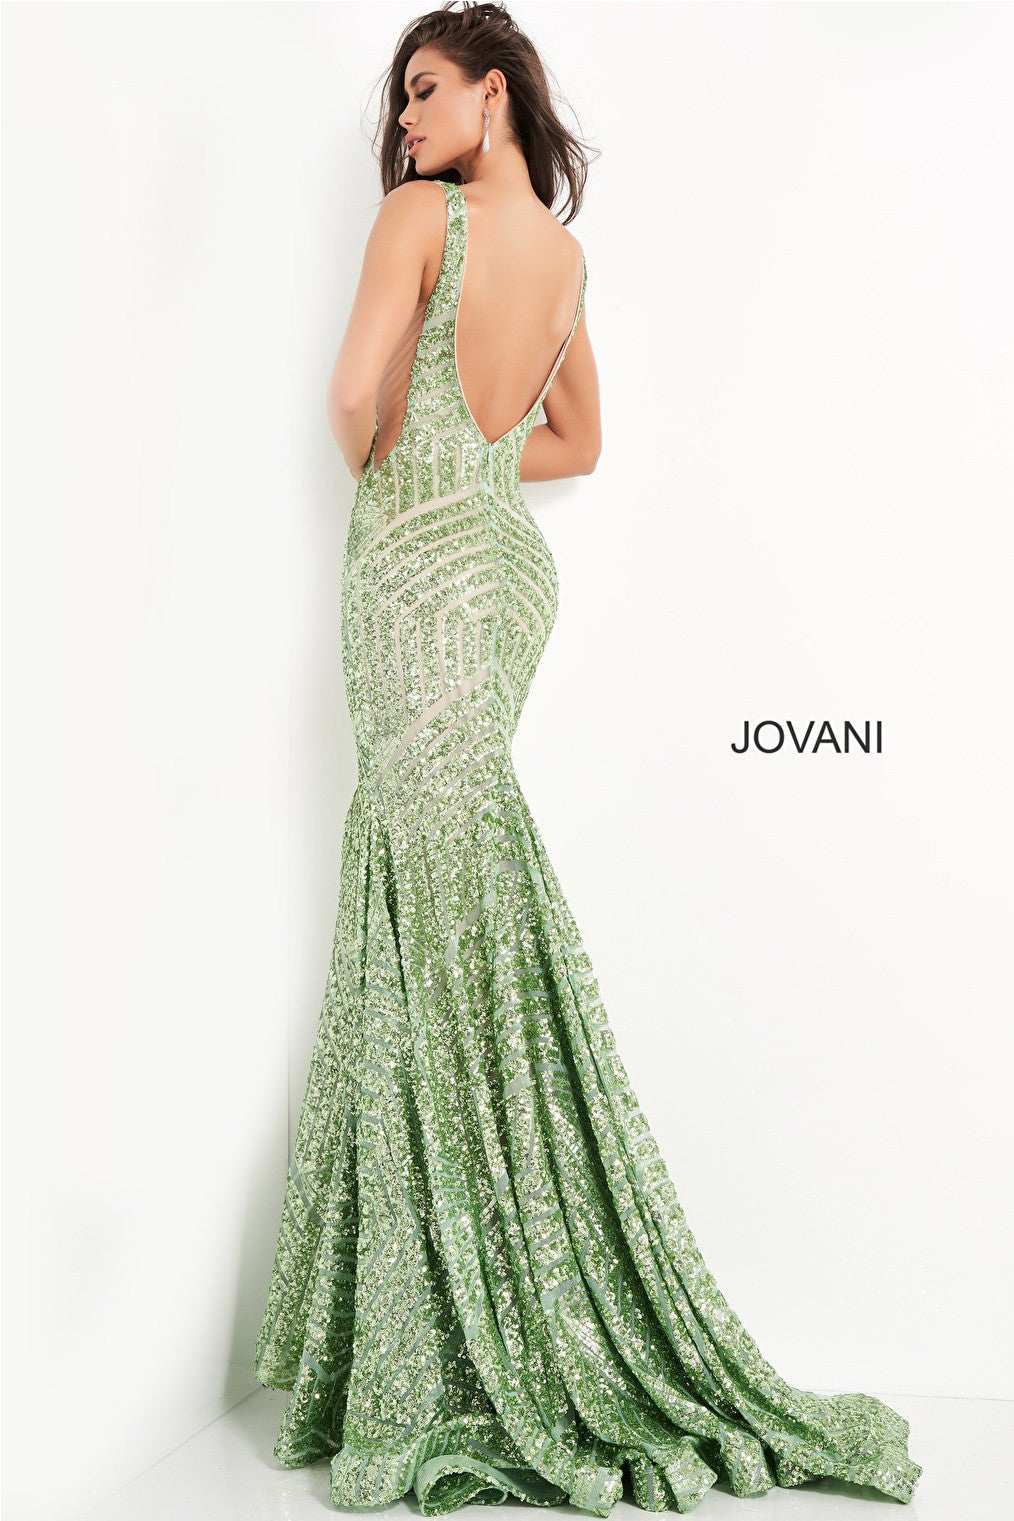 Sequin embellished pale green prom dress Jovani 59762